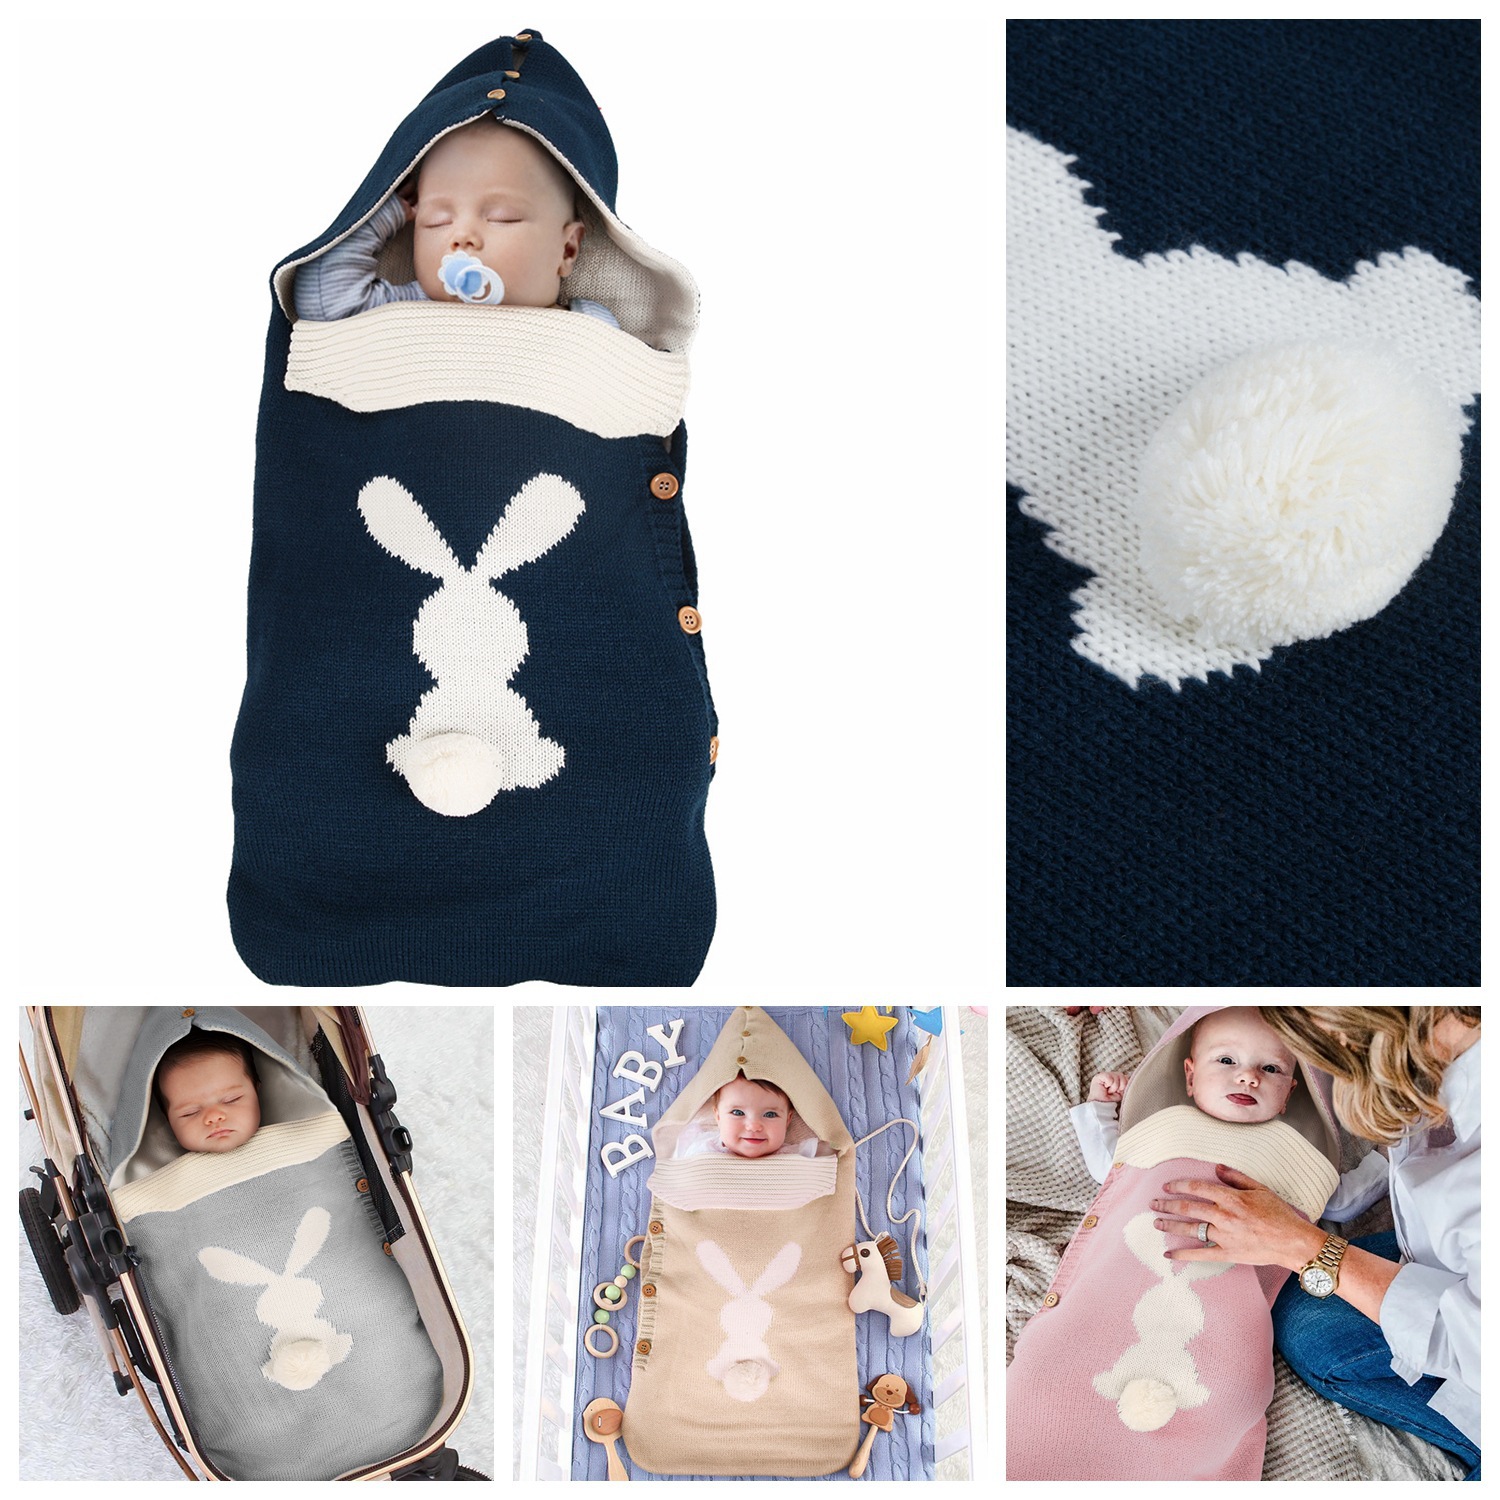 新款热销兔子儿童睡袋毛绒尾巴纽扣儿童防踢被户外睡袋批发